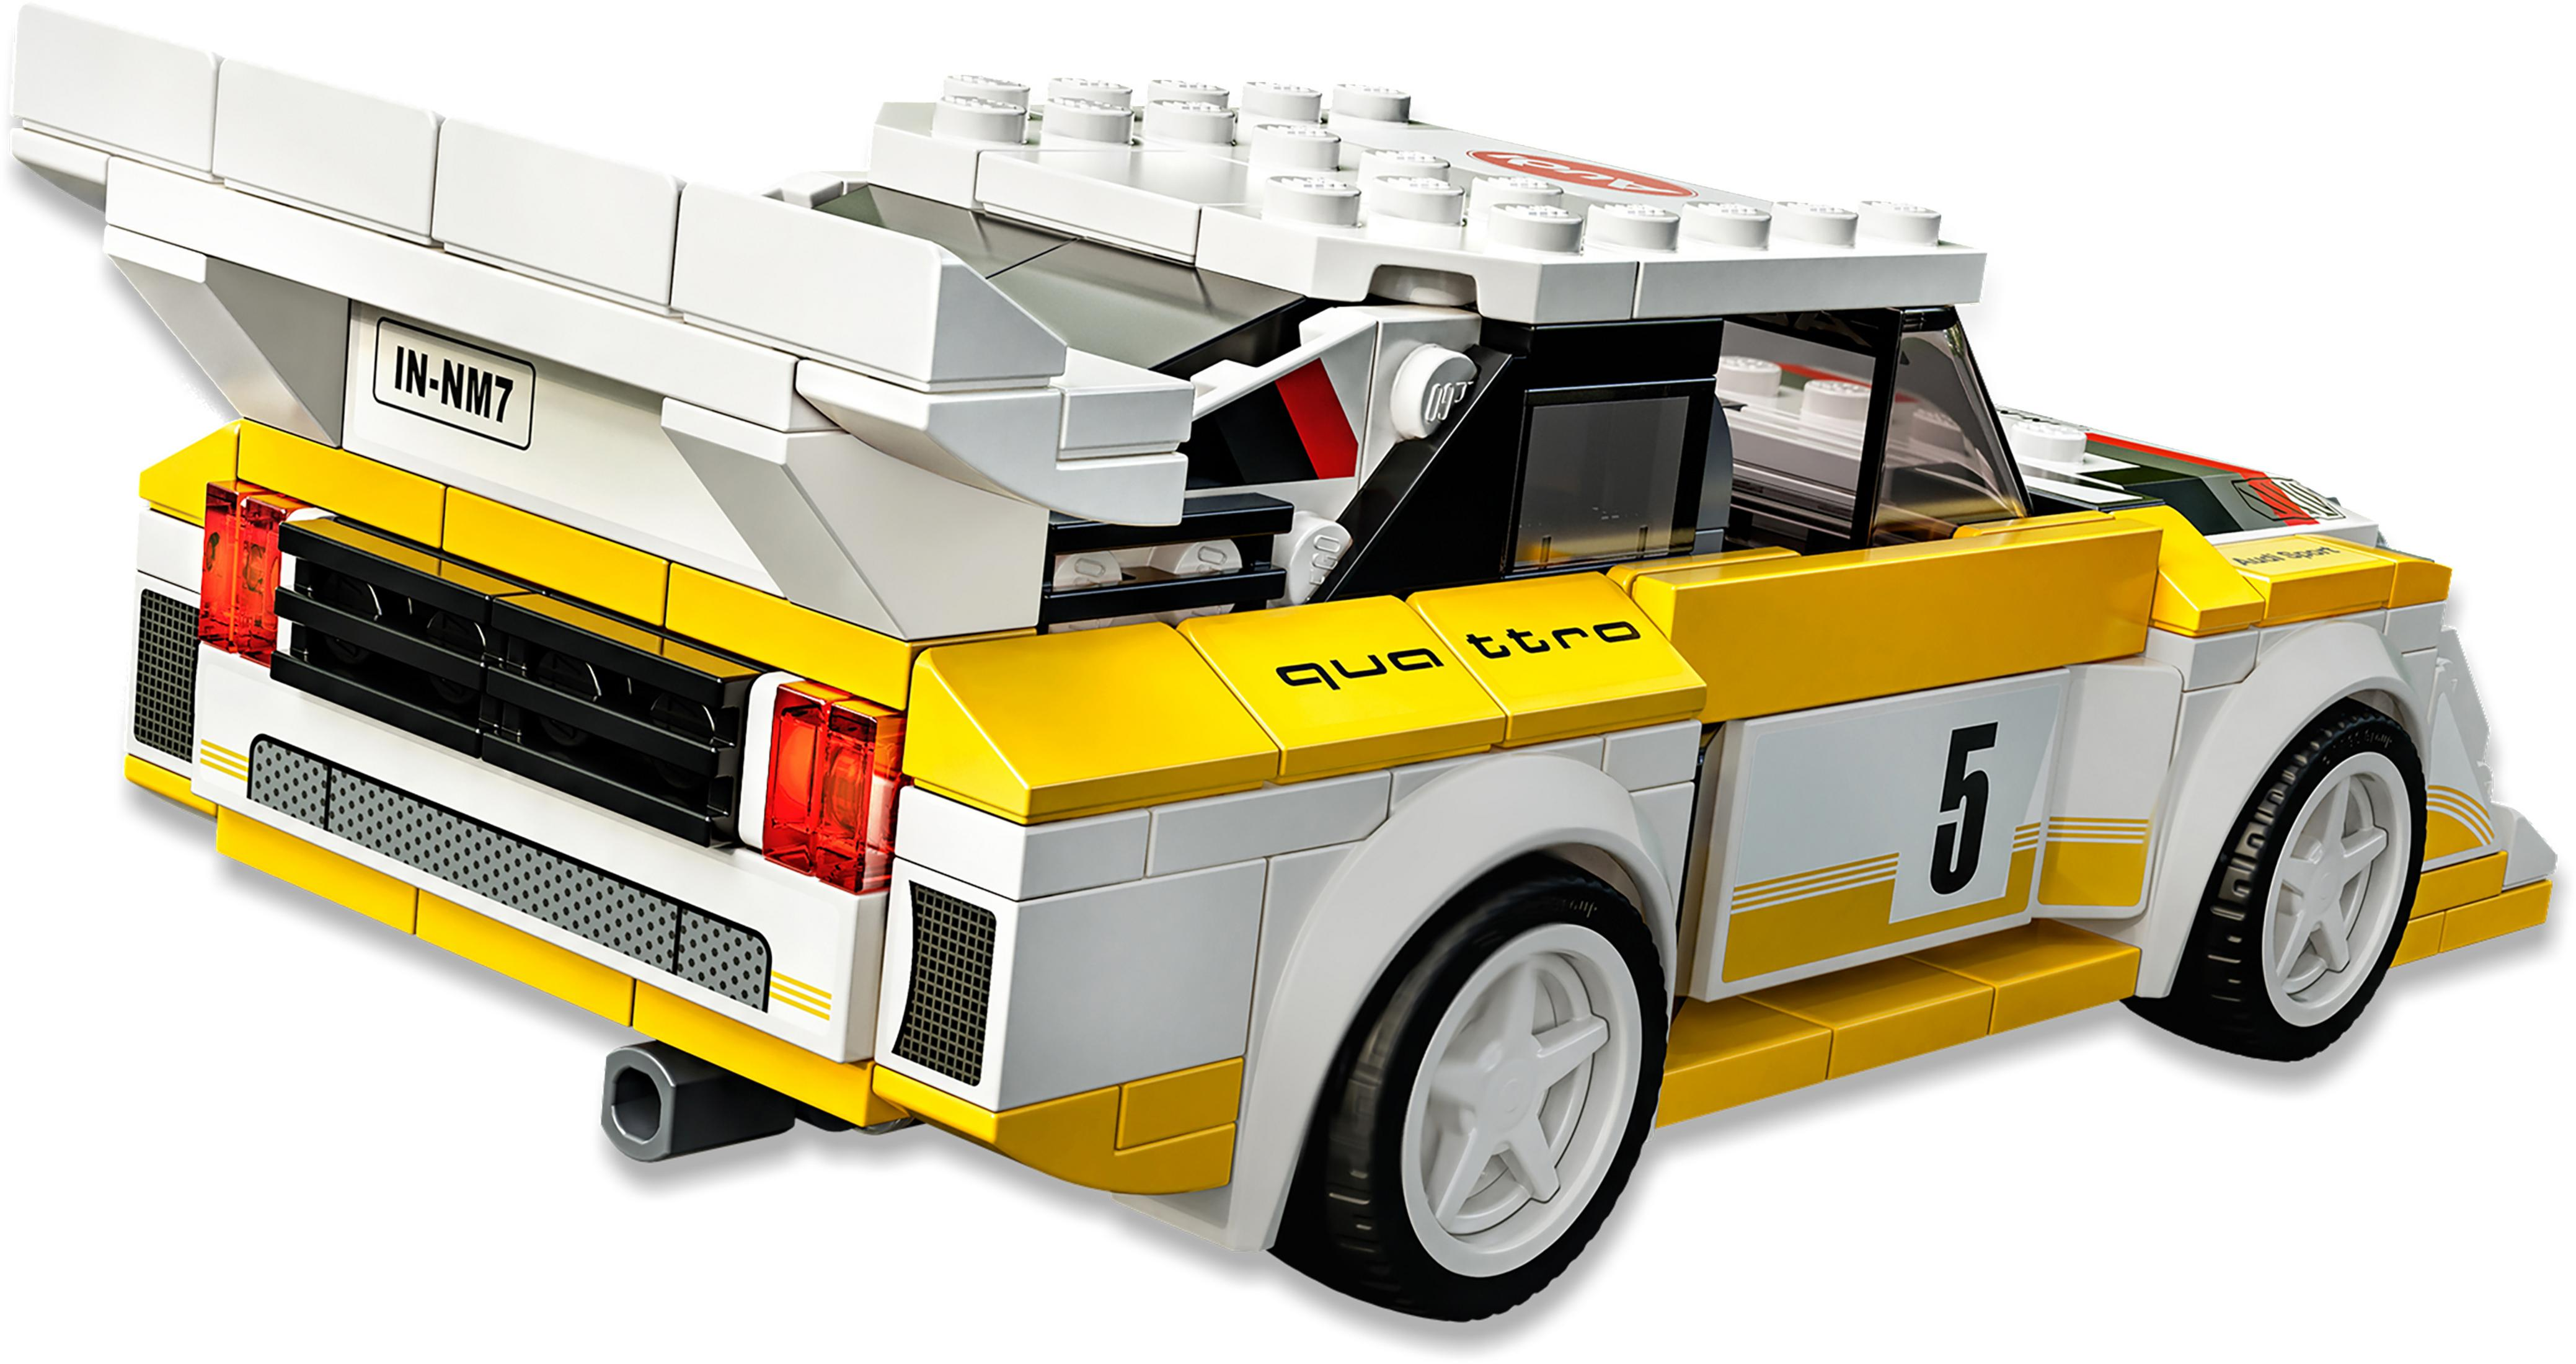 SPORT Bausatz, Mehrfarbig LEGO QUATTRO 76897 1985 AUDI S1